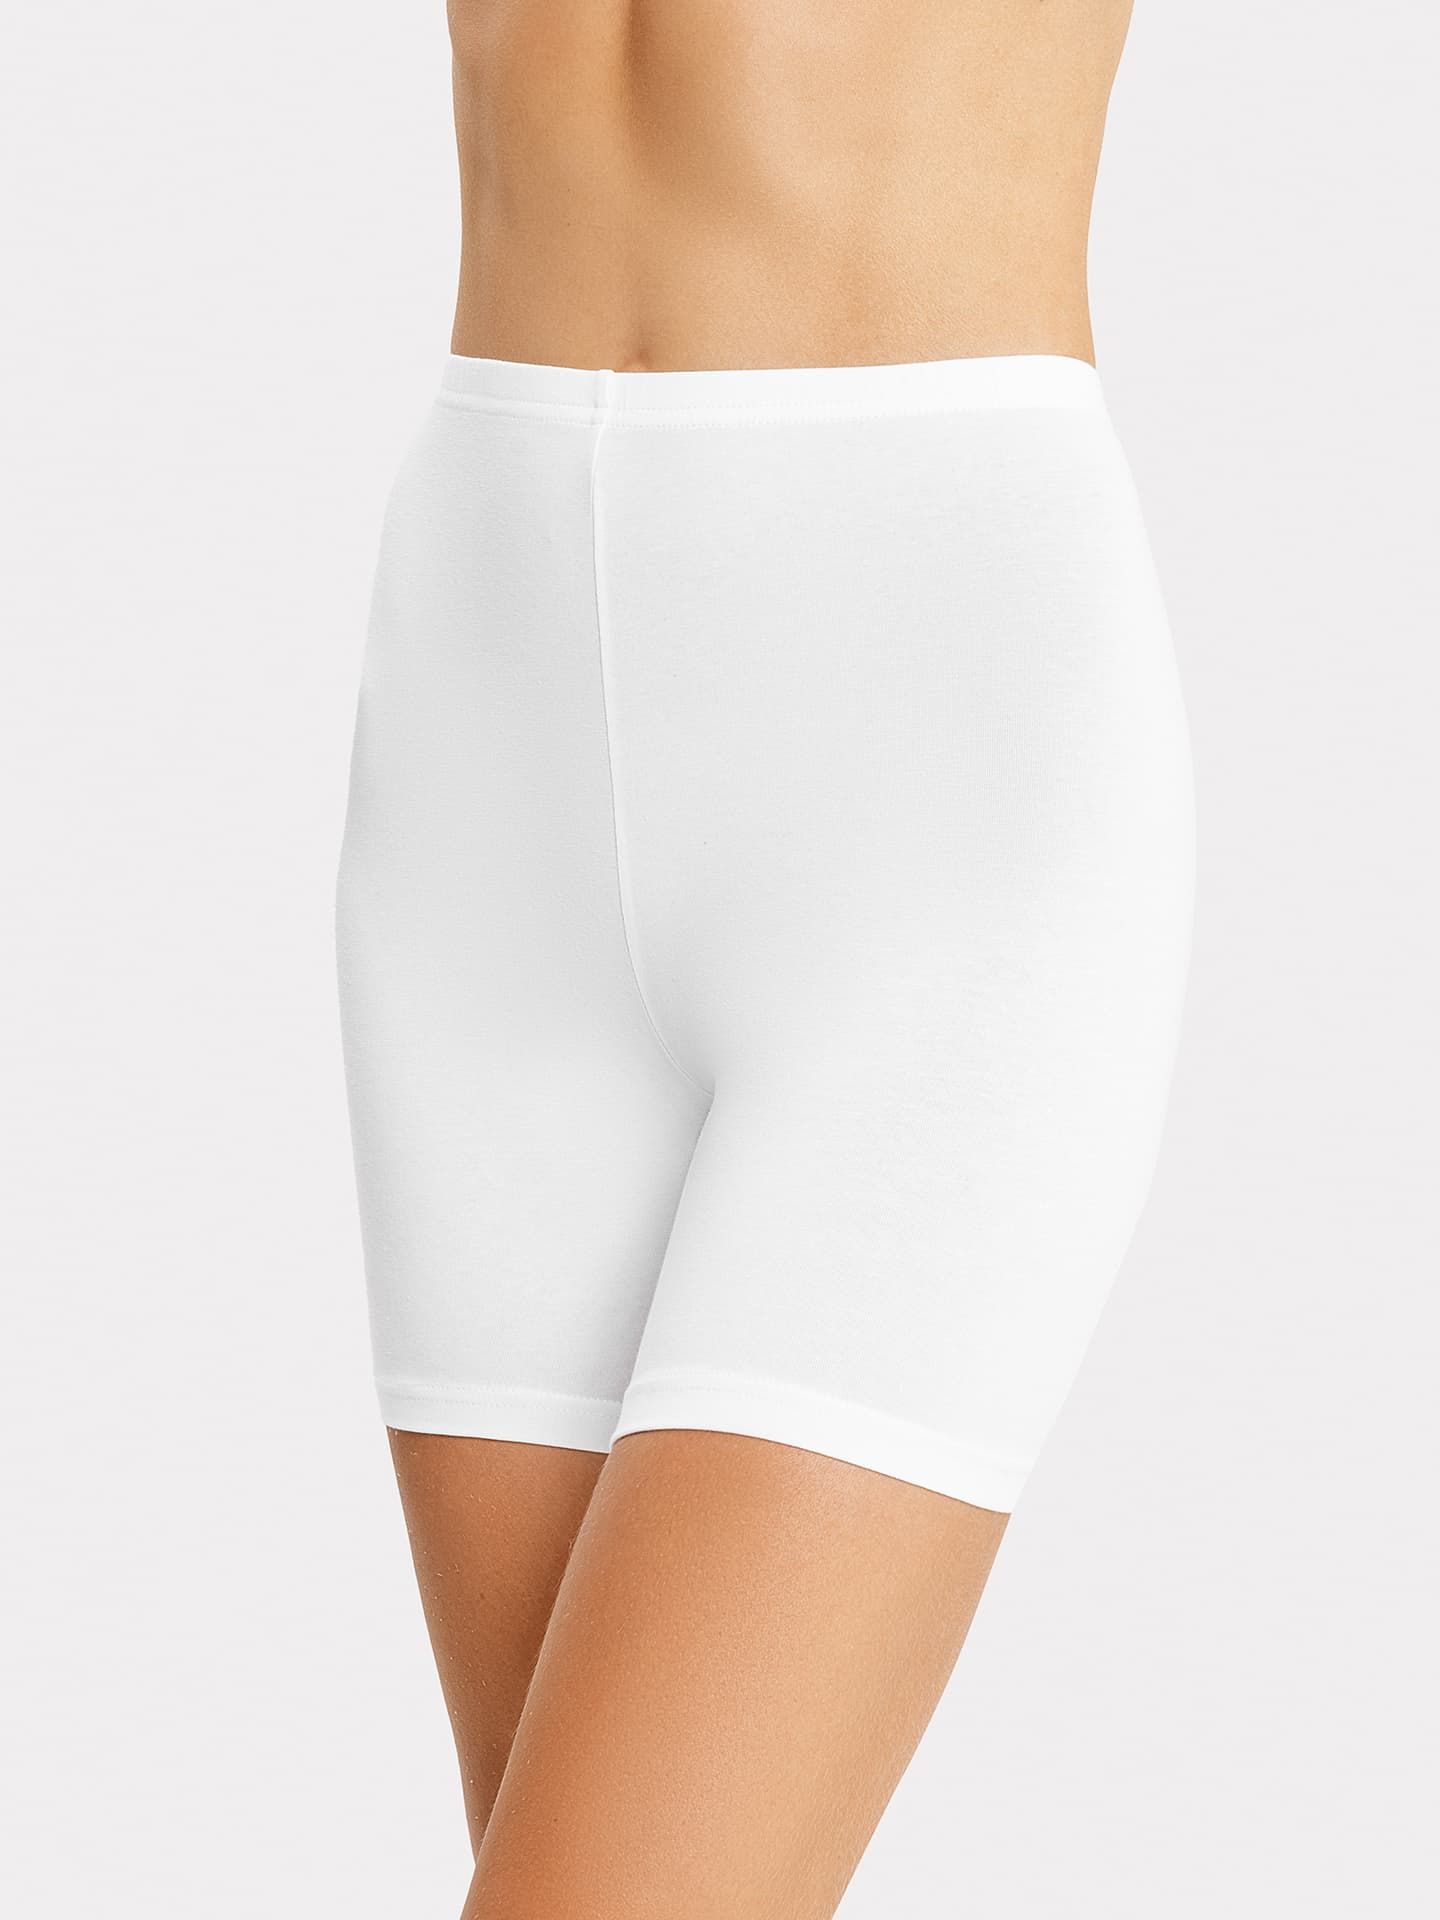 Женские панталоны Norveg Soft